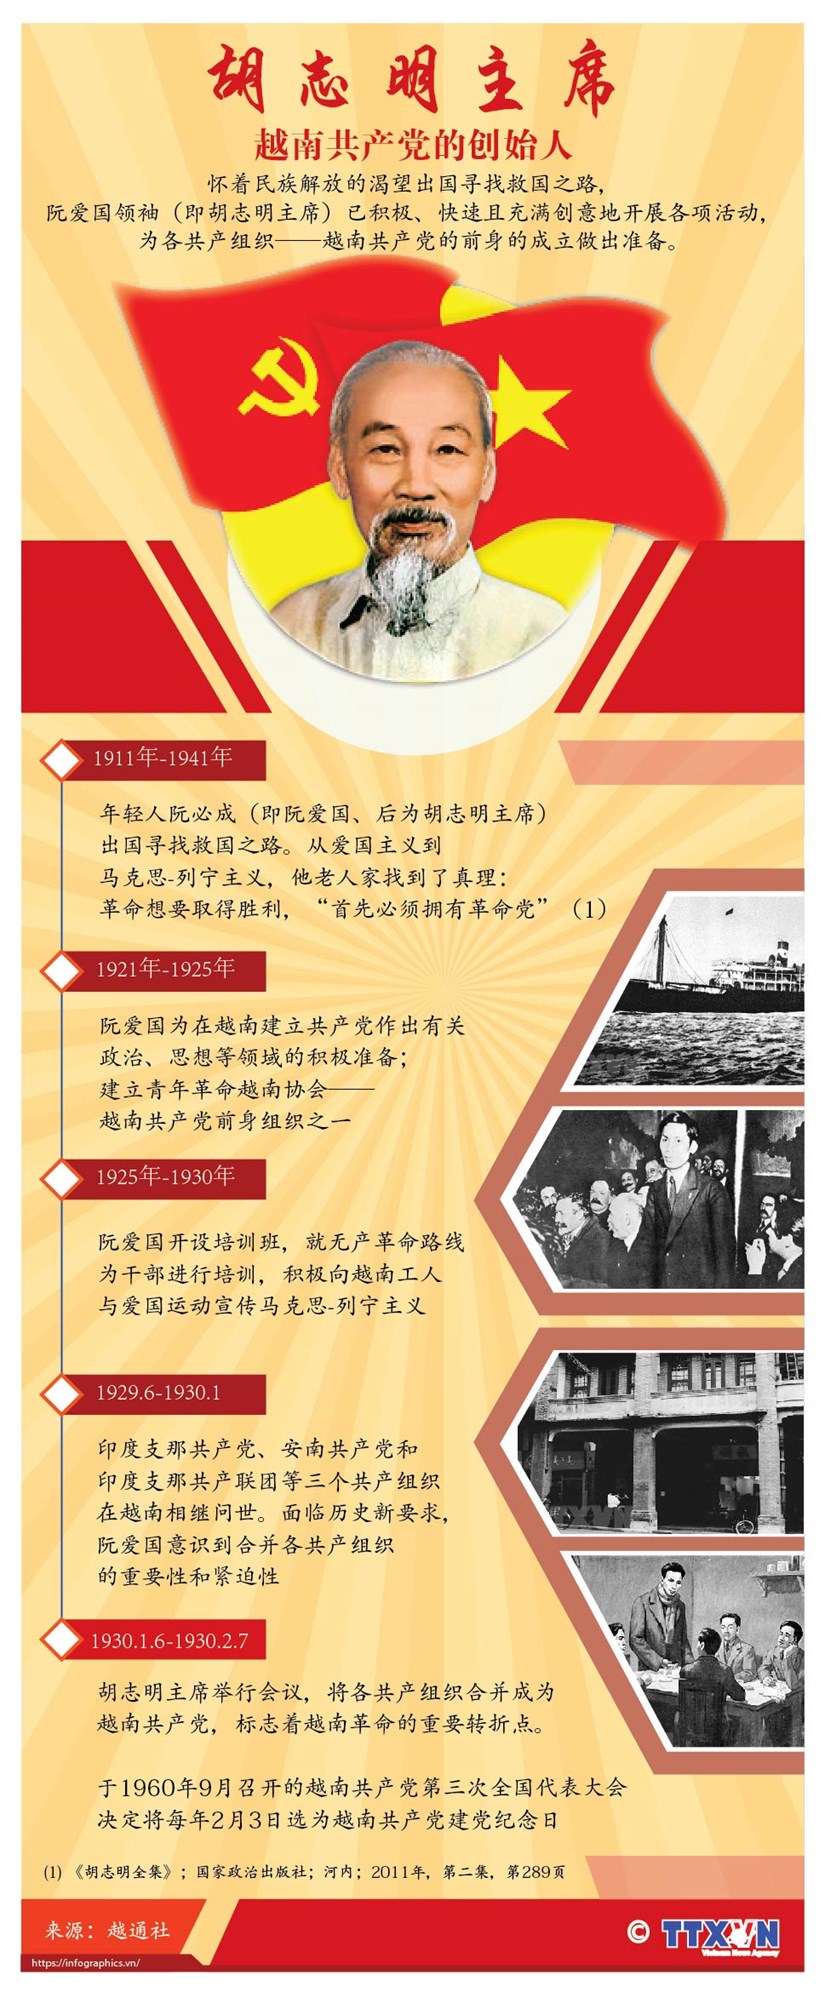 胡志明主席——越南共产党的创始人